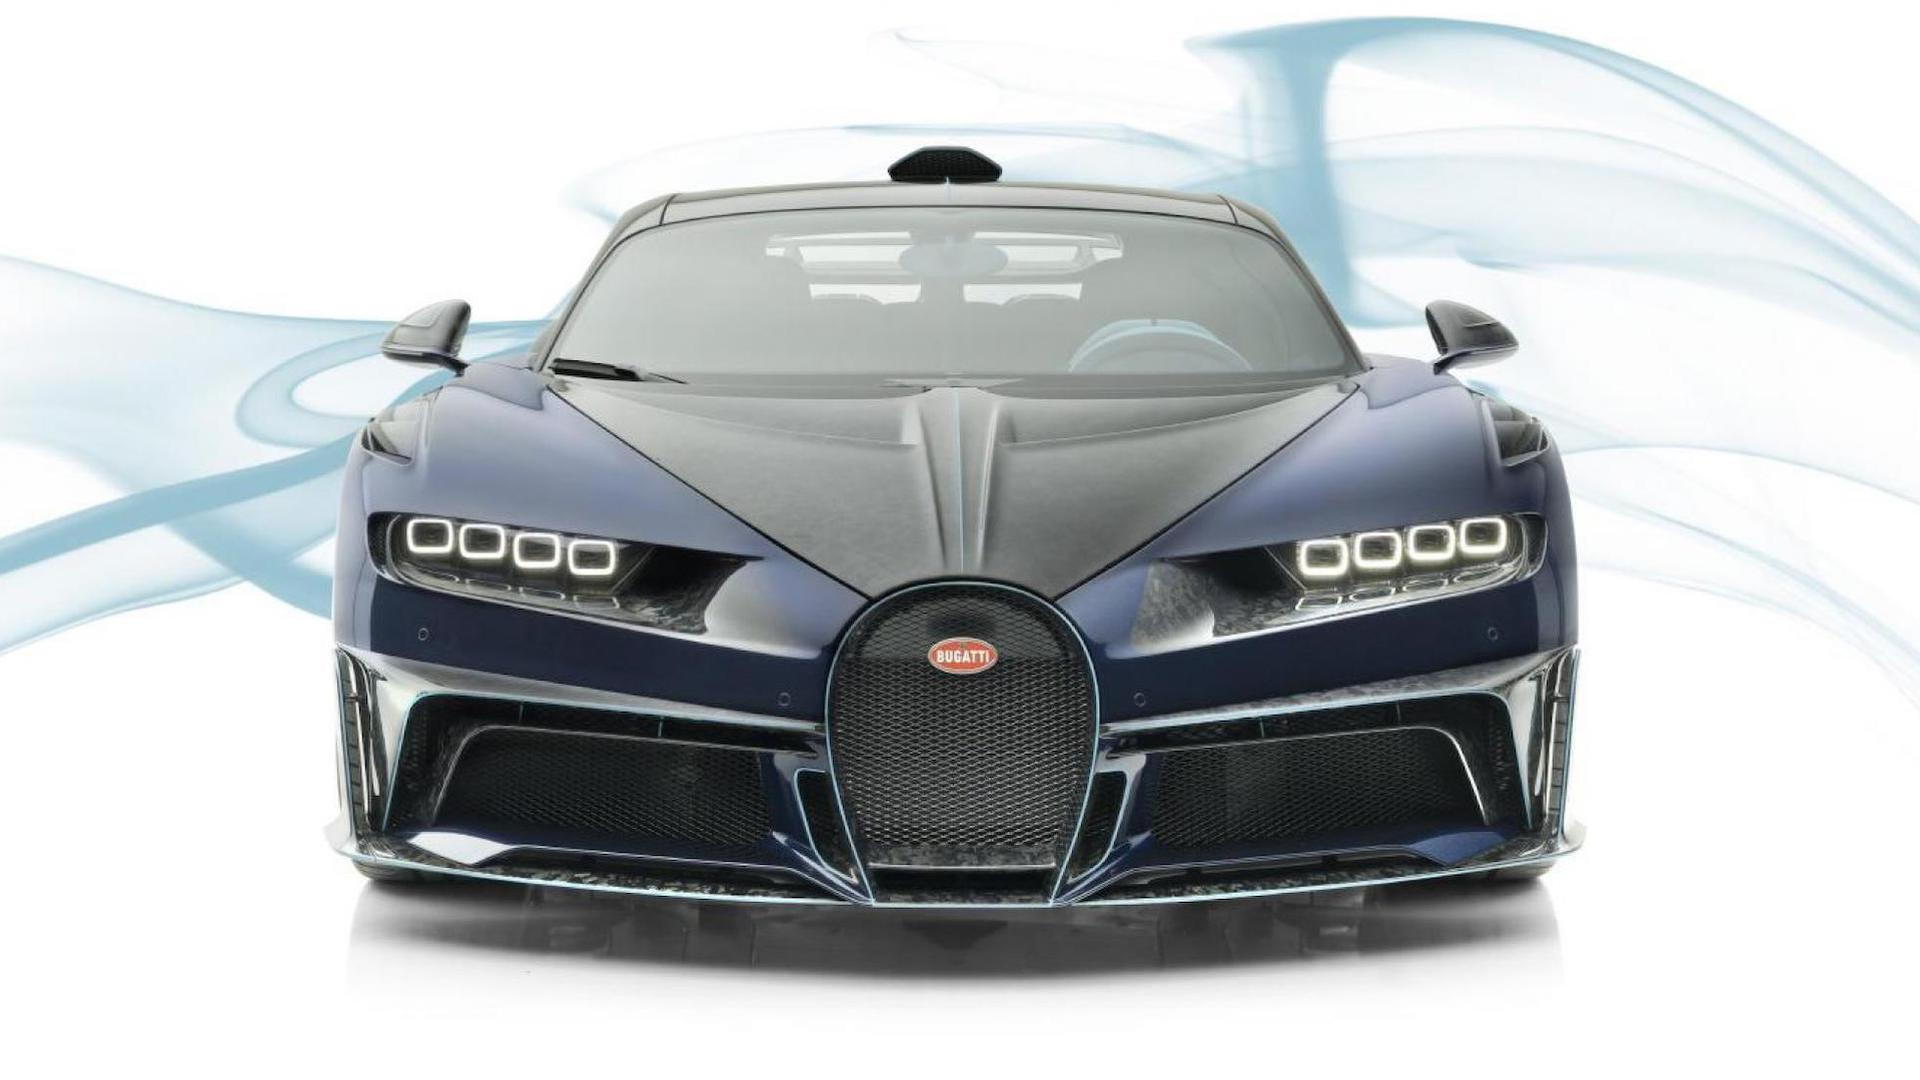 Bugatti Chiron by Mansory